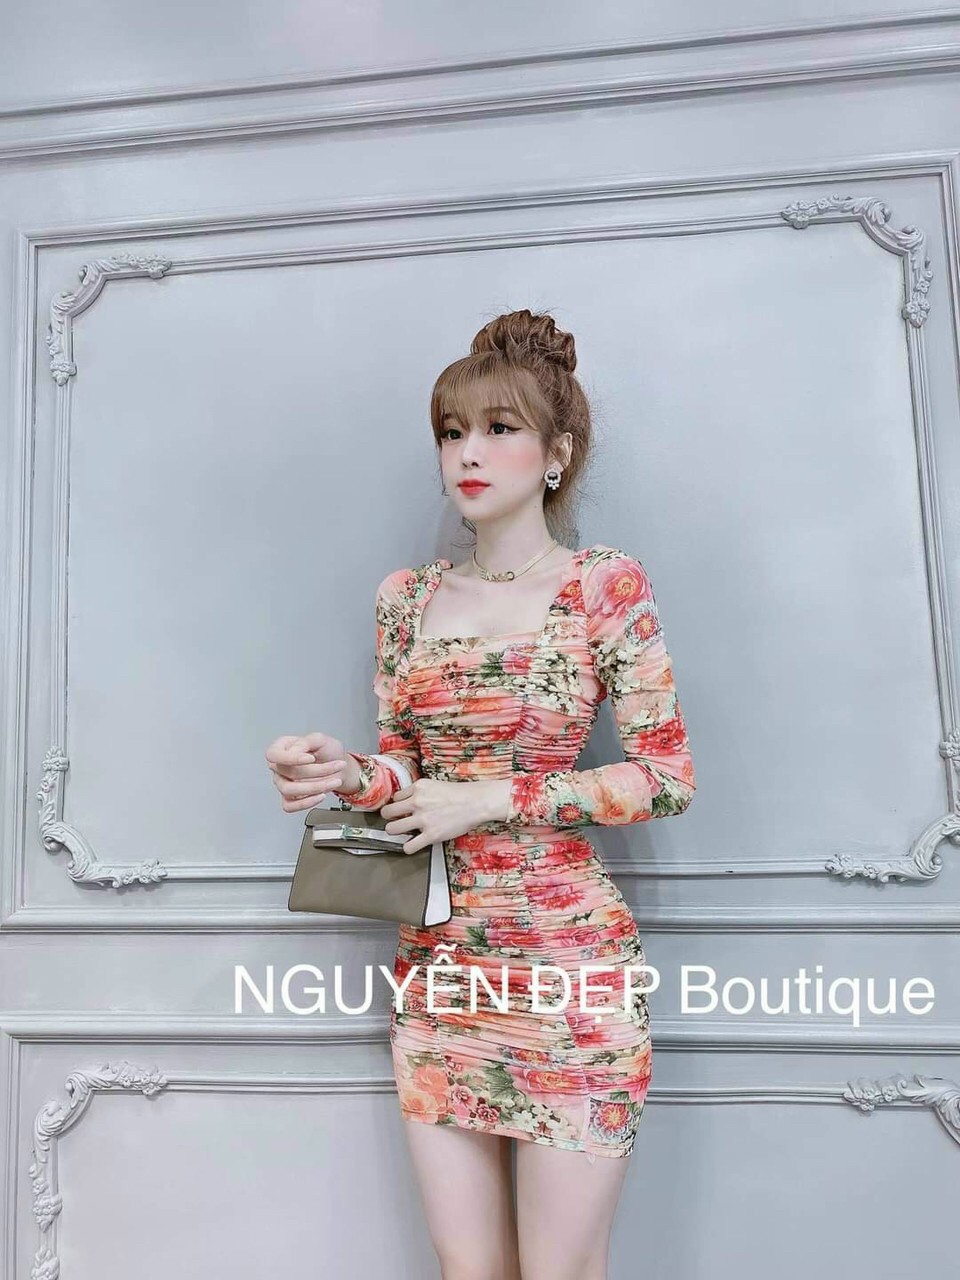 Shop bán váy body ĐẸP ở Hà Nội hiện nay cho nàng CÁ TÍNH